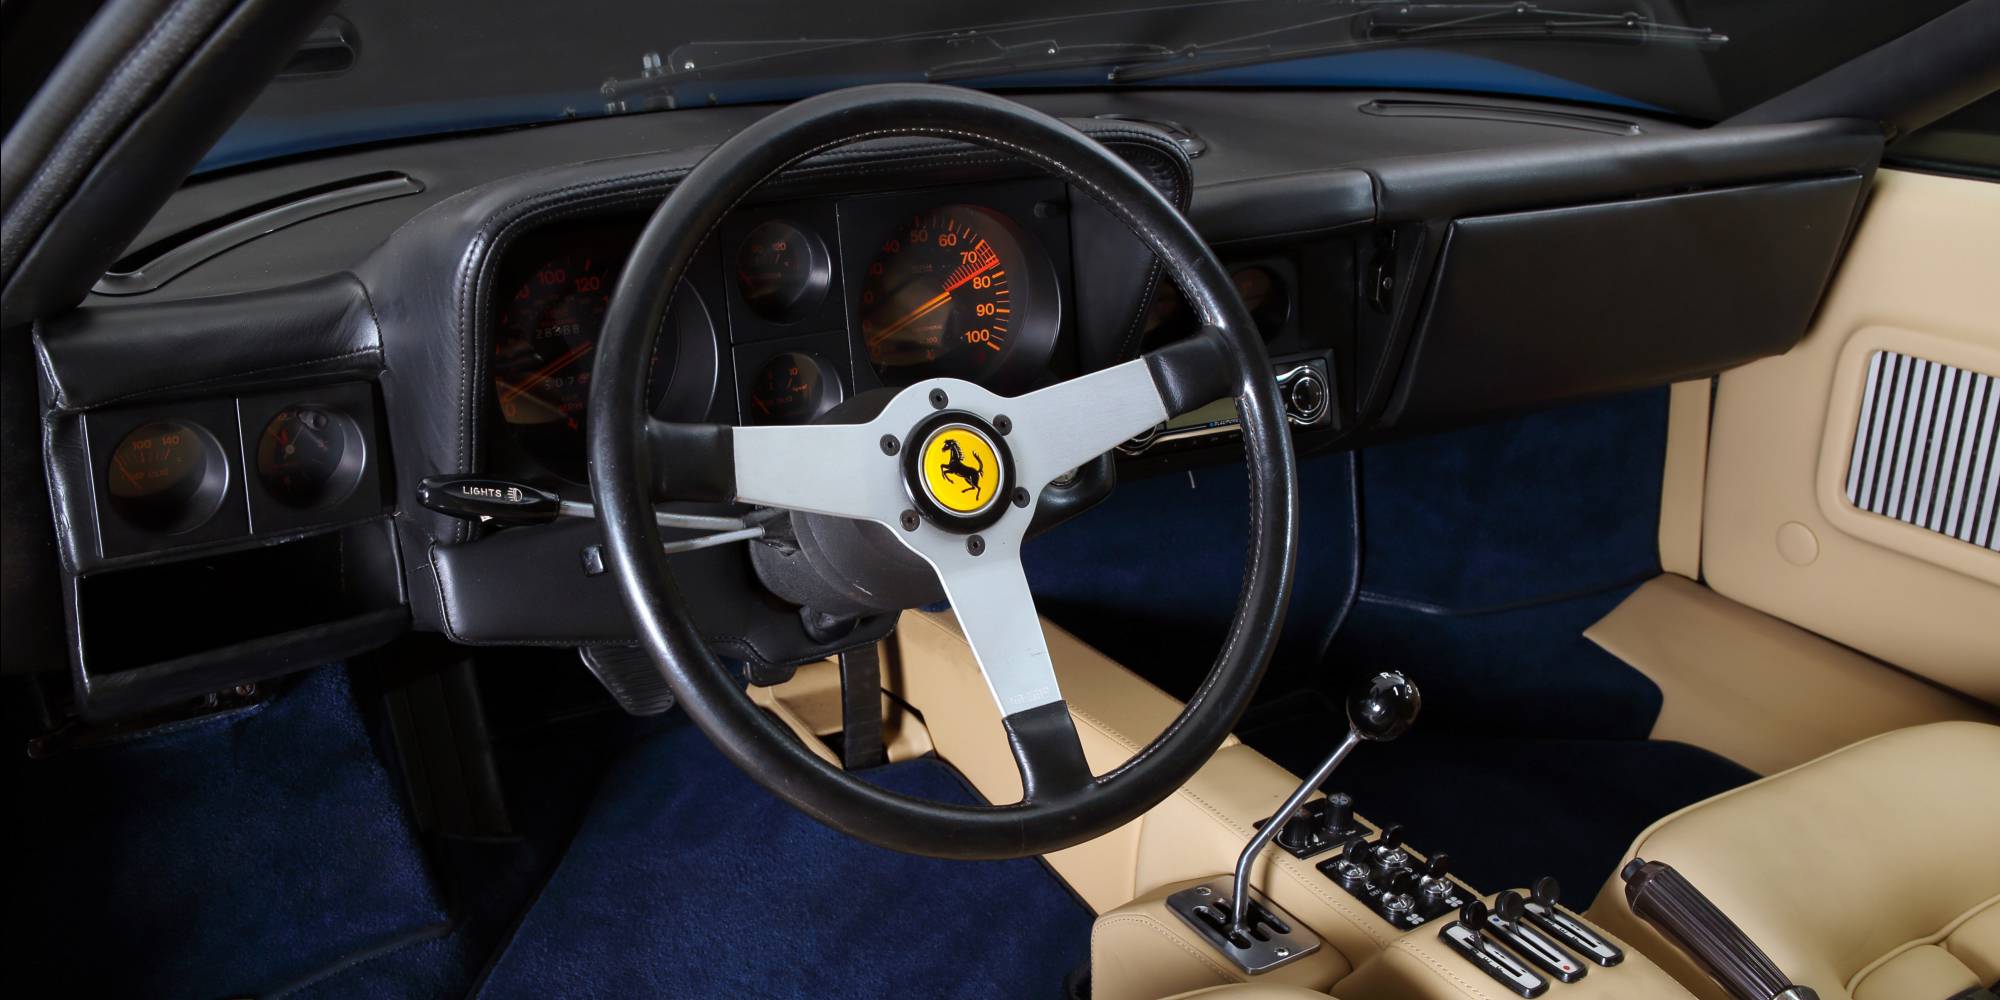 1974年式 フェラーリ 365 GT/4 BBビンゴスポーツ/希少車、 絶版車